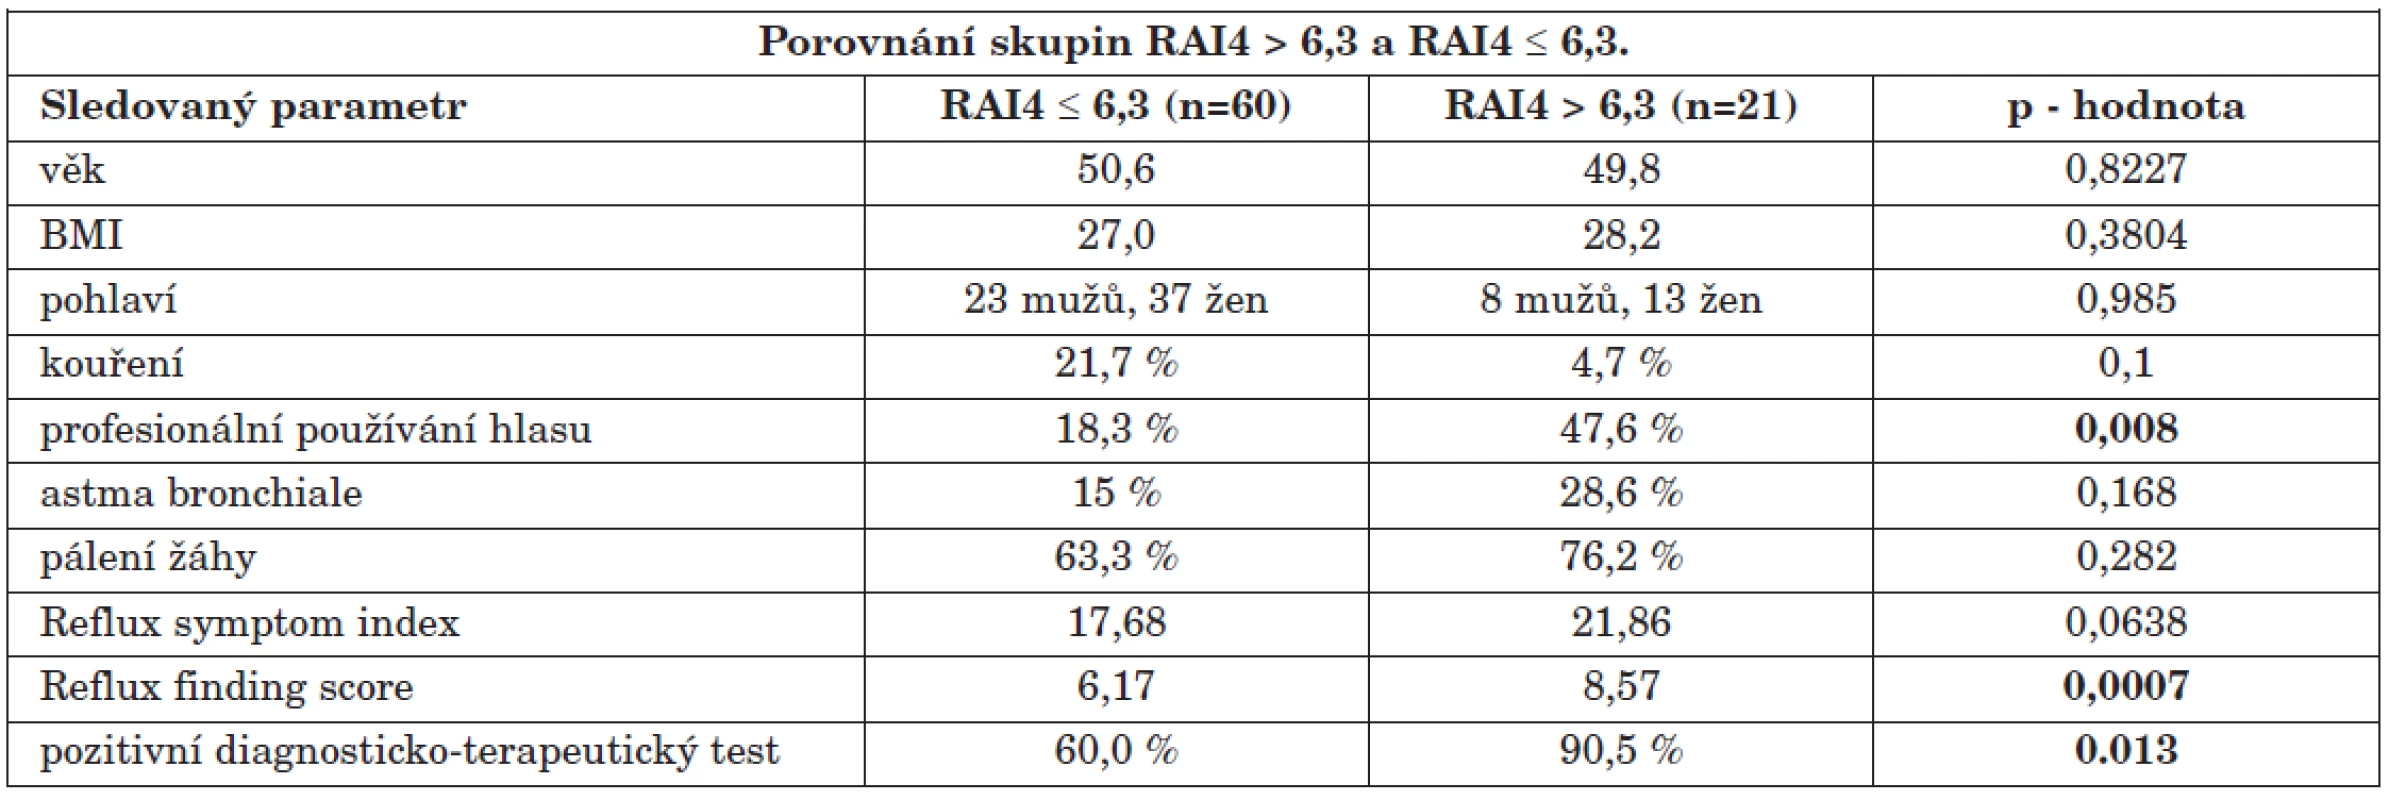 Porovnání skupin RAI4 &gt; 6,3 (n=21) a RAI4 ≤ 6,3 (n=60). Ve sloupcích „RAI4 &gt; 6,3“ a „RAI4 ≤ 6,3“ jsou buď průměrné hodnoty nebo procento pacientů se zkoumaným parametrem z celkového počtu pacientů v daném souboru. Uvedeny jsou p - hodnoty sledovaných parametrů, přičemž zvýrazněny jsou ty hodnoty, které se mezi oběma skupinami signifikantně odlišovaly (p &gt; 0,05).